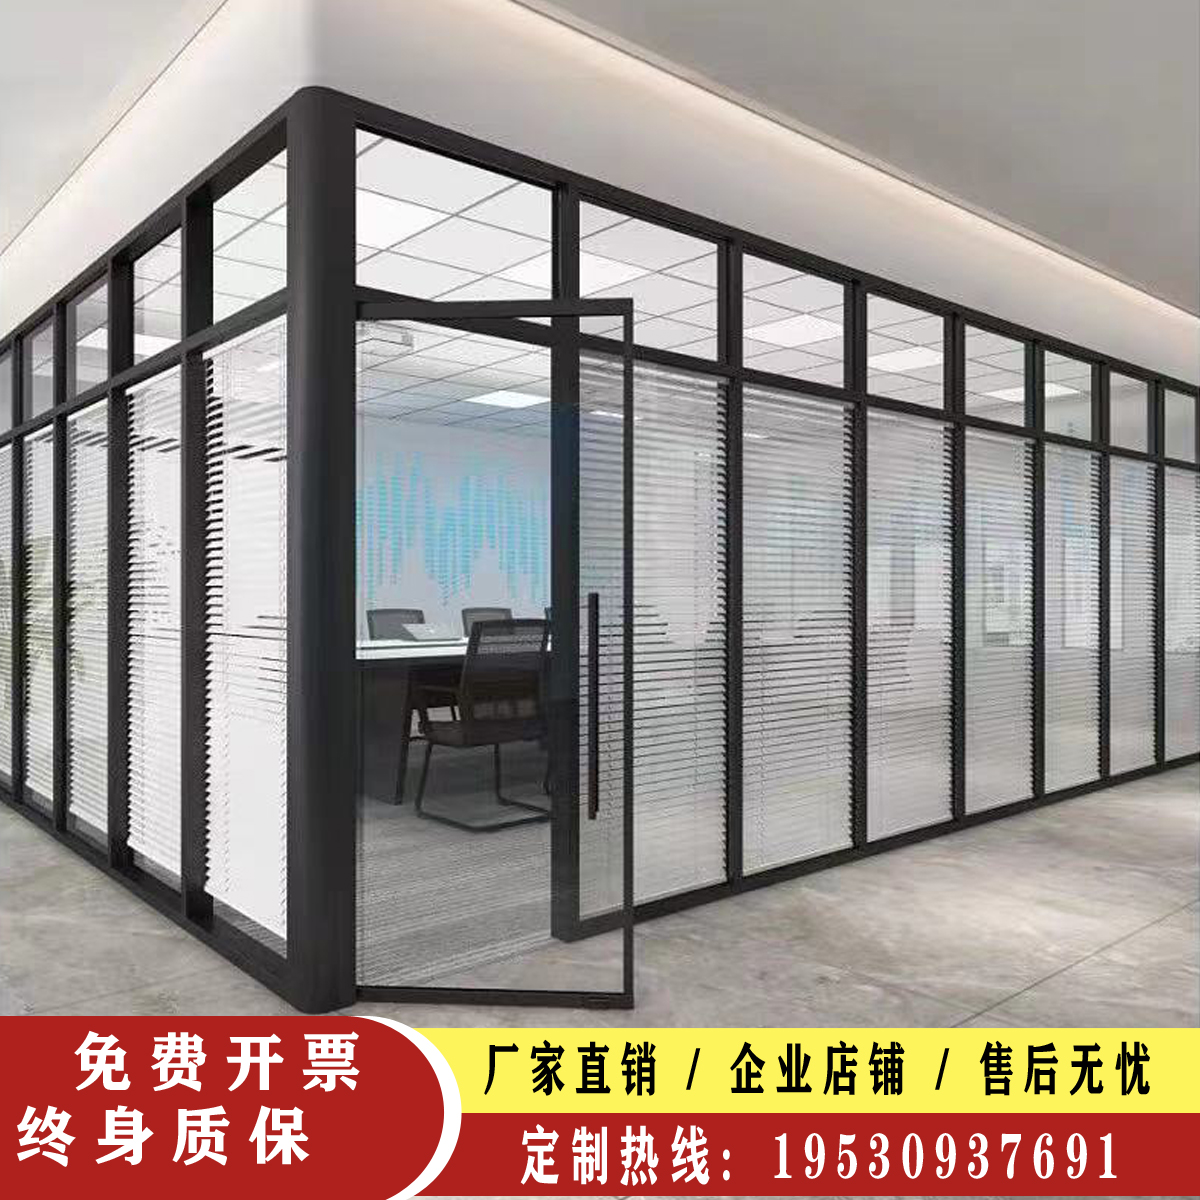 重庆办公室双层钢化玻璃隔断墙铝合金隔音磨砂百叶高隔断隔间定制